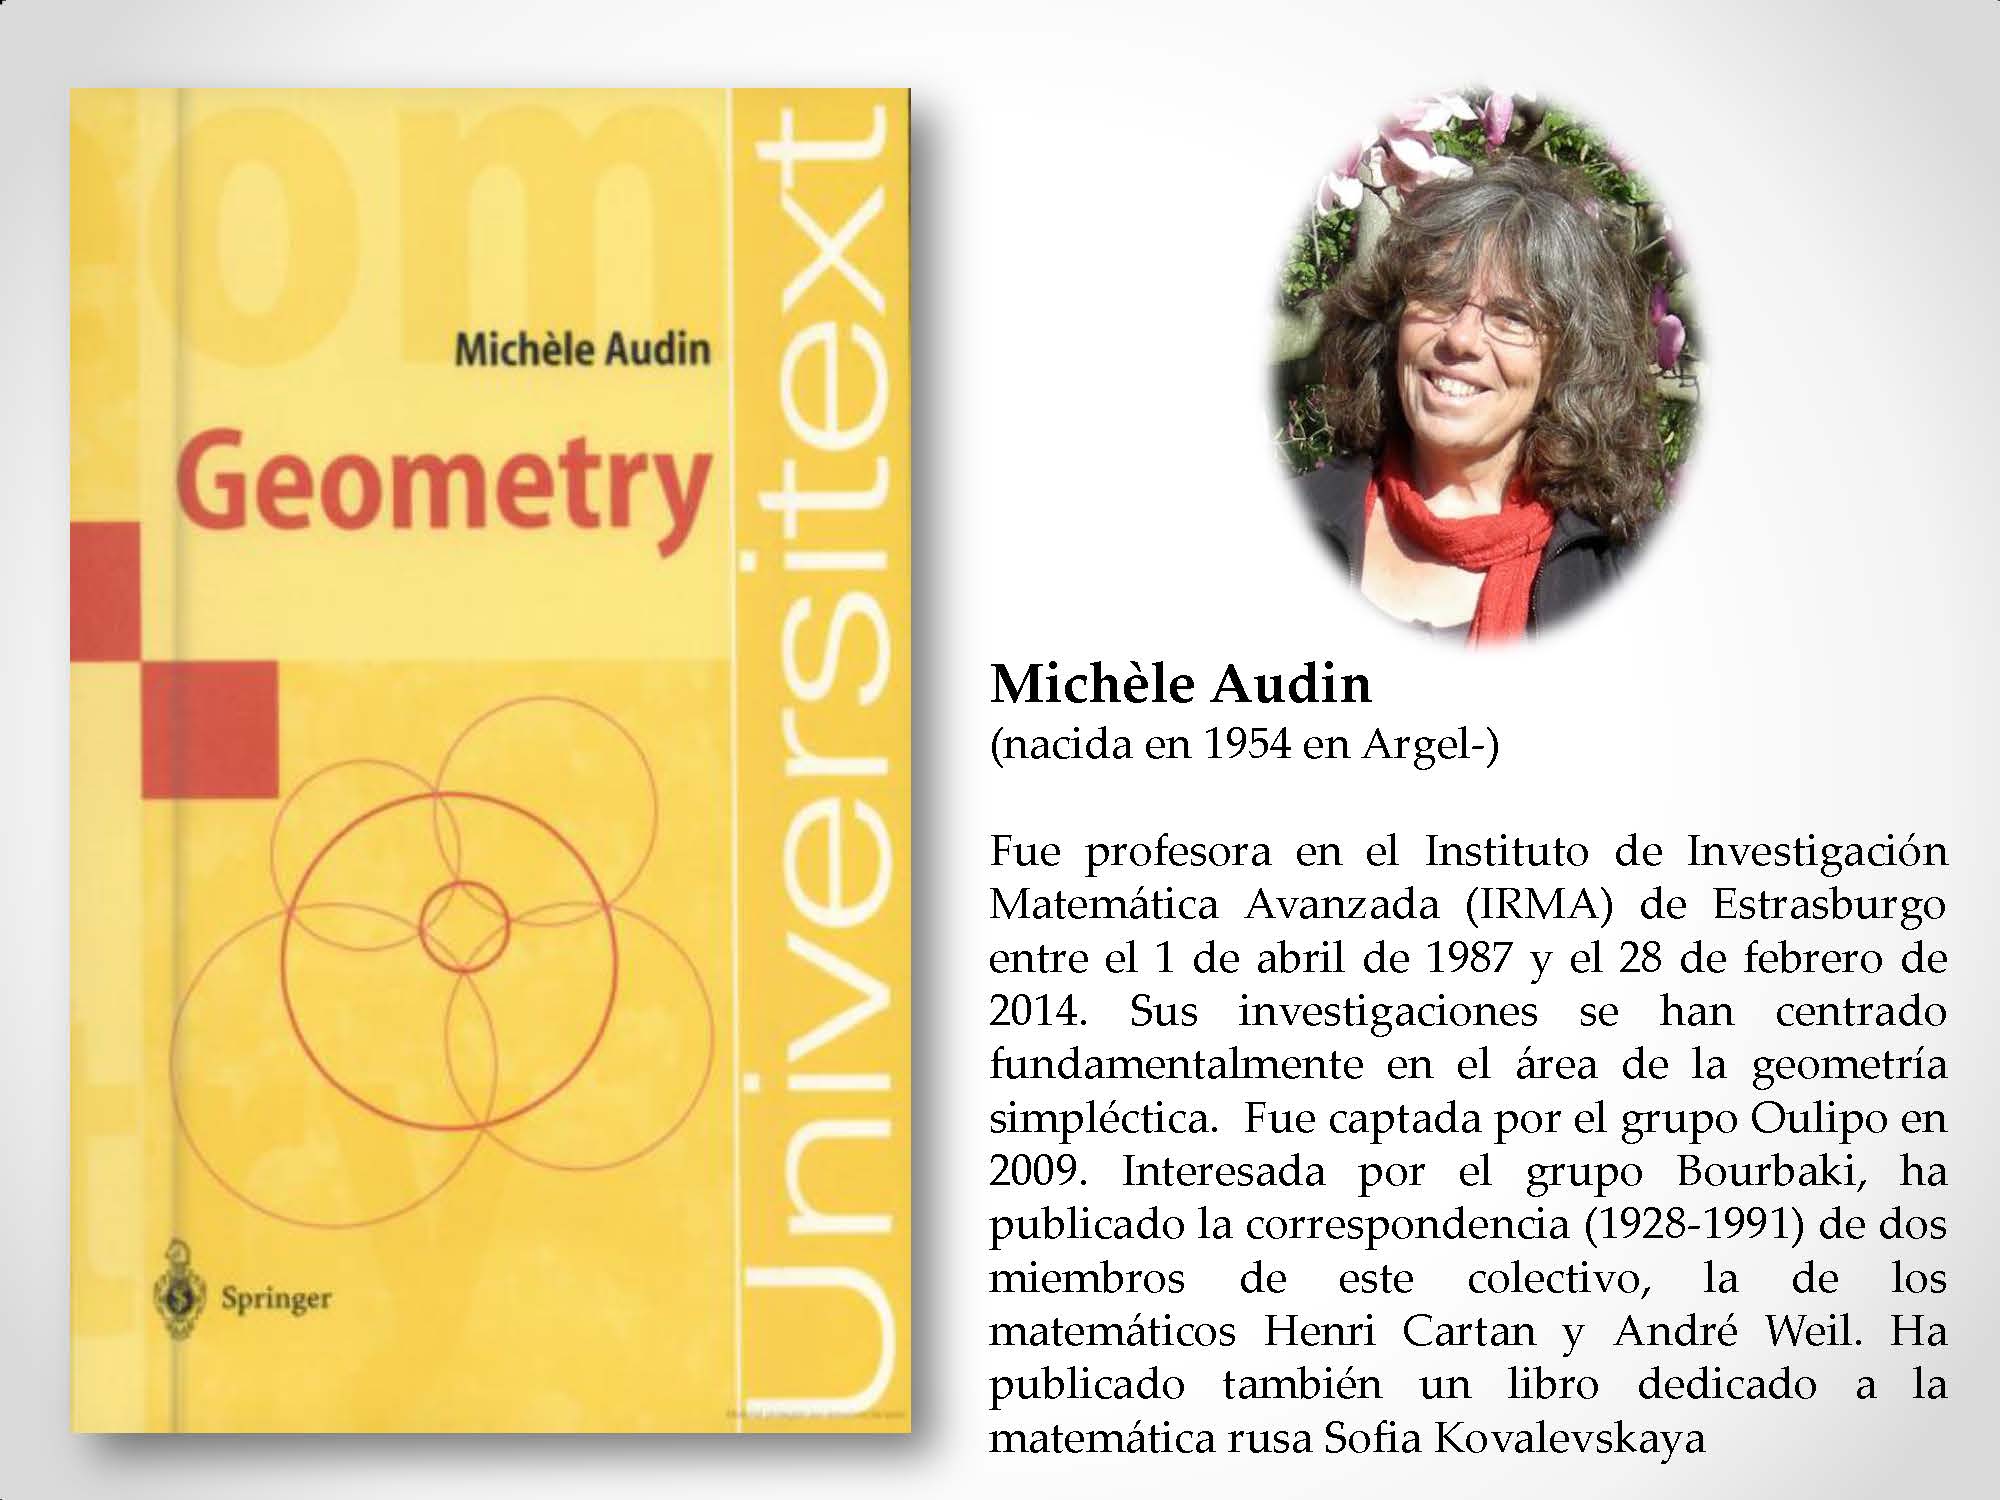 Michèle Audin (nacida en 1954 en Argel-) Fue profesora en el Instituto de Investigación Matemática Avanzada (IRMA) de Estrasburgo entre el 1 de abril de 1987 y el 28 de febrero de 2014. Sus investigaciones se han centrado fundamentalmente en el área de la geometría simpléctica. Fue captada por el grupo Oulipo en 2009. Interesada por el grupo Bourbaki, ha publicado la correspondencia (1928-1991) de dos miembros de este colectivo, la de los matemáticos Henri Cartan y André Weil. Ha publicado también un libro dedicado a la matemática rusa Sofia Kovalevskaya